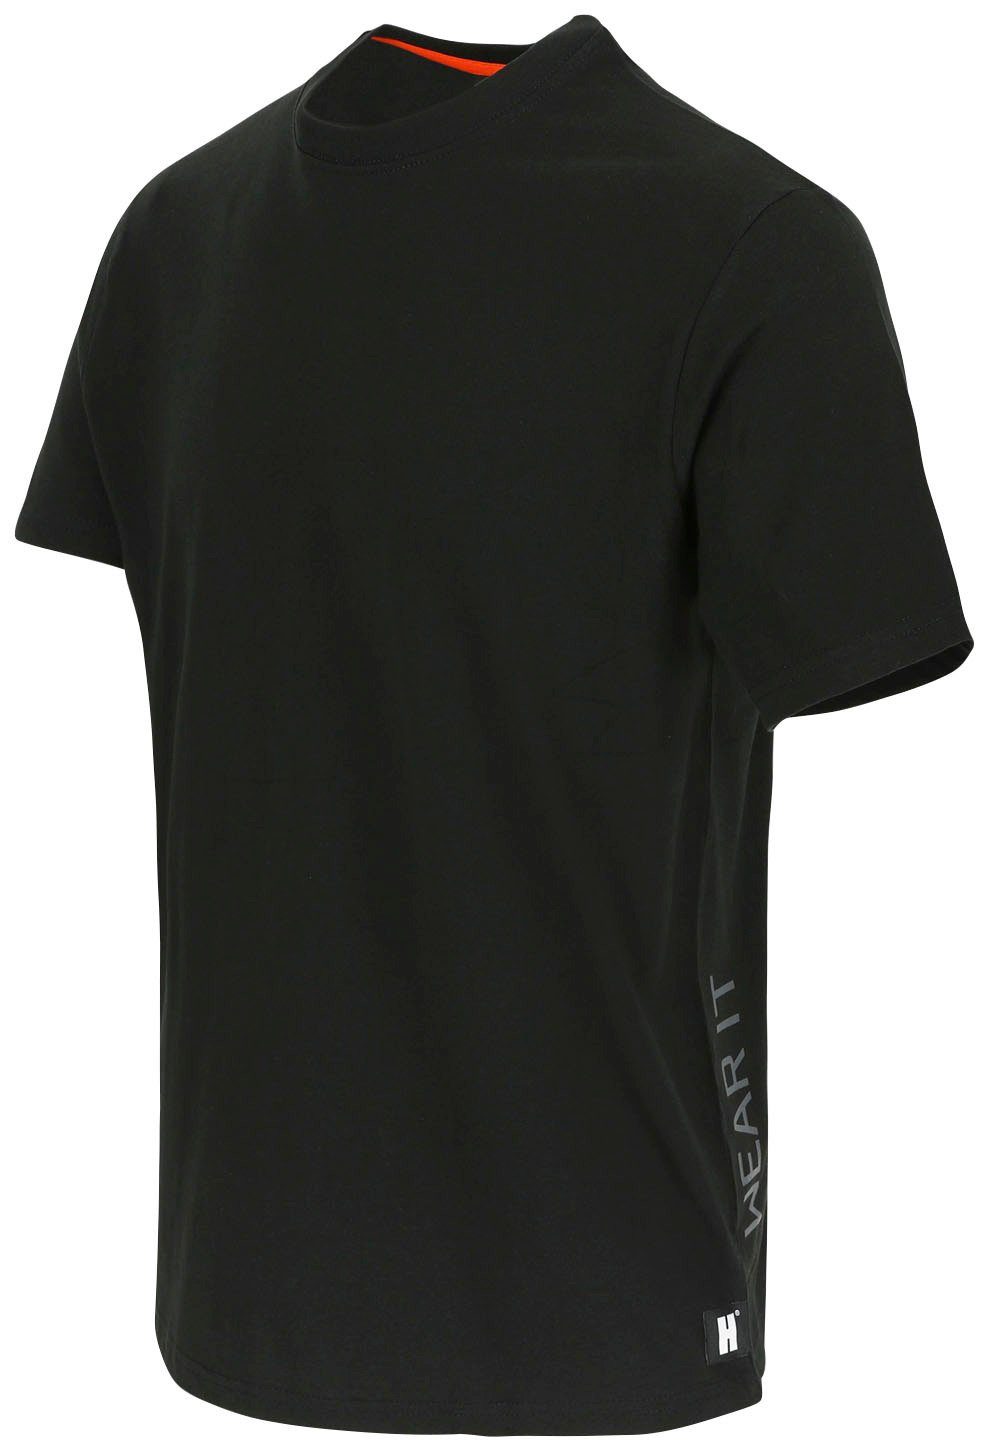 Ärmel kurze Rippstrickkragen Herock®-Aufdruck, Callius Herock schwarz Ärmel, T-Shirt kurze Rundhalsausschnitt, T-Shirt